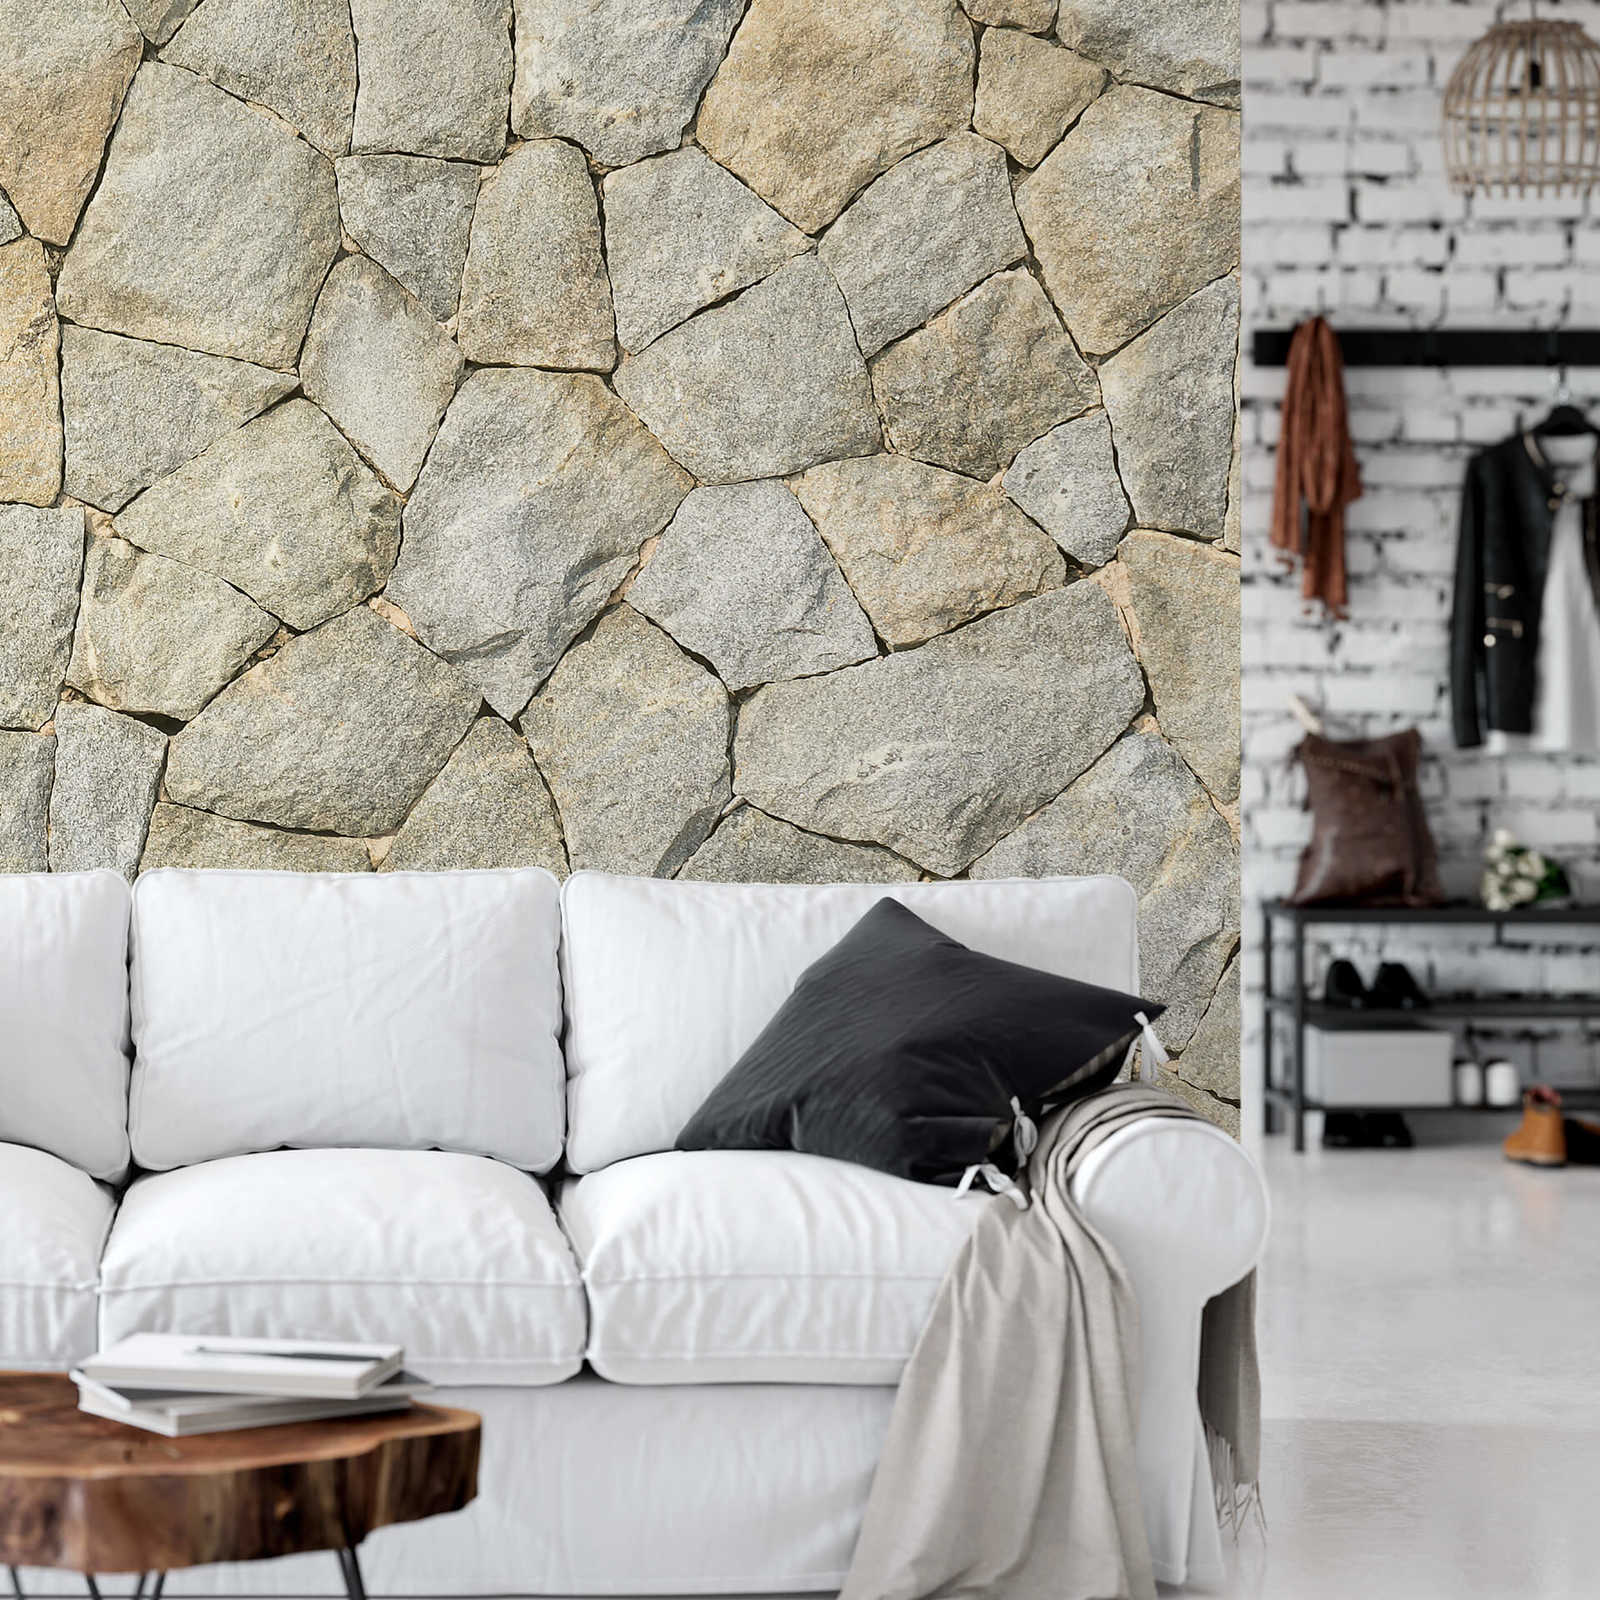             Mural de pared 3D con aspecto de piedra natural - gris
        